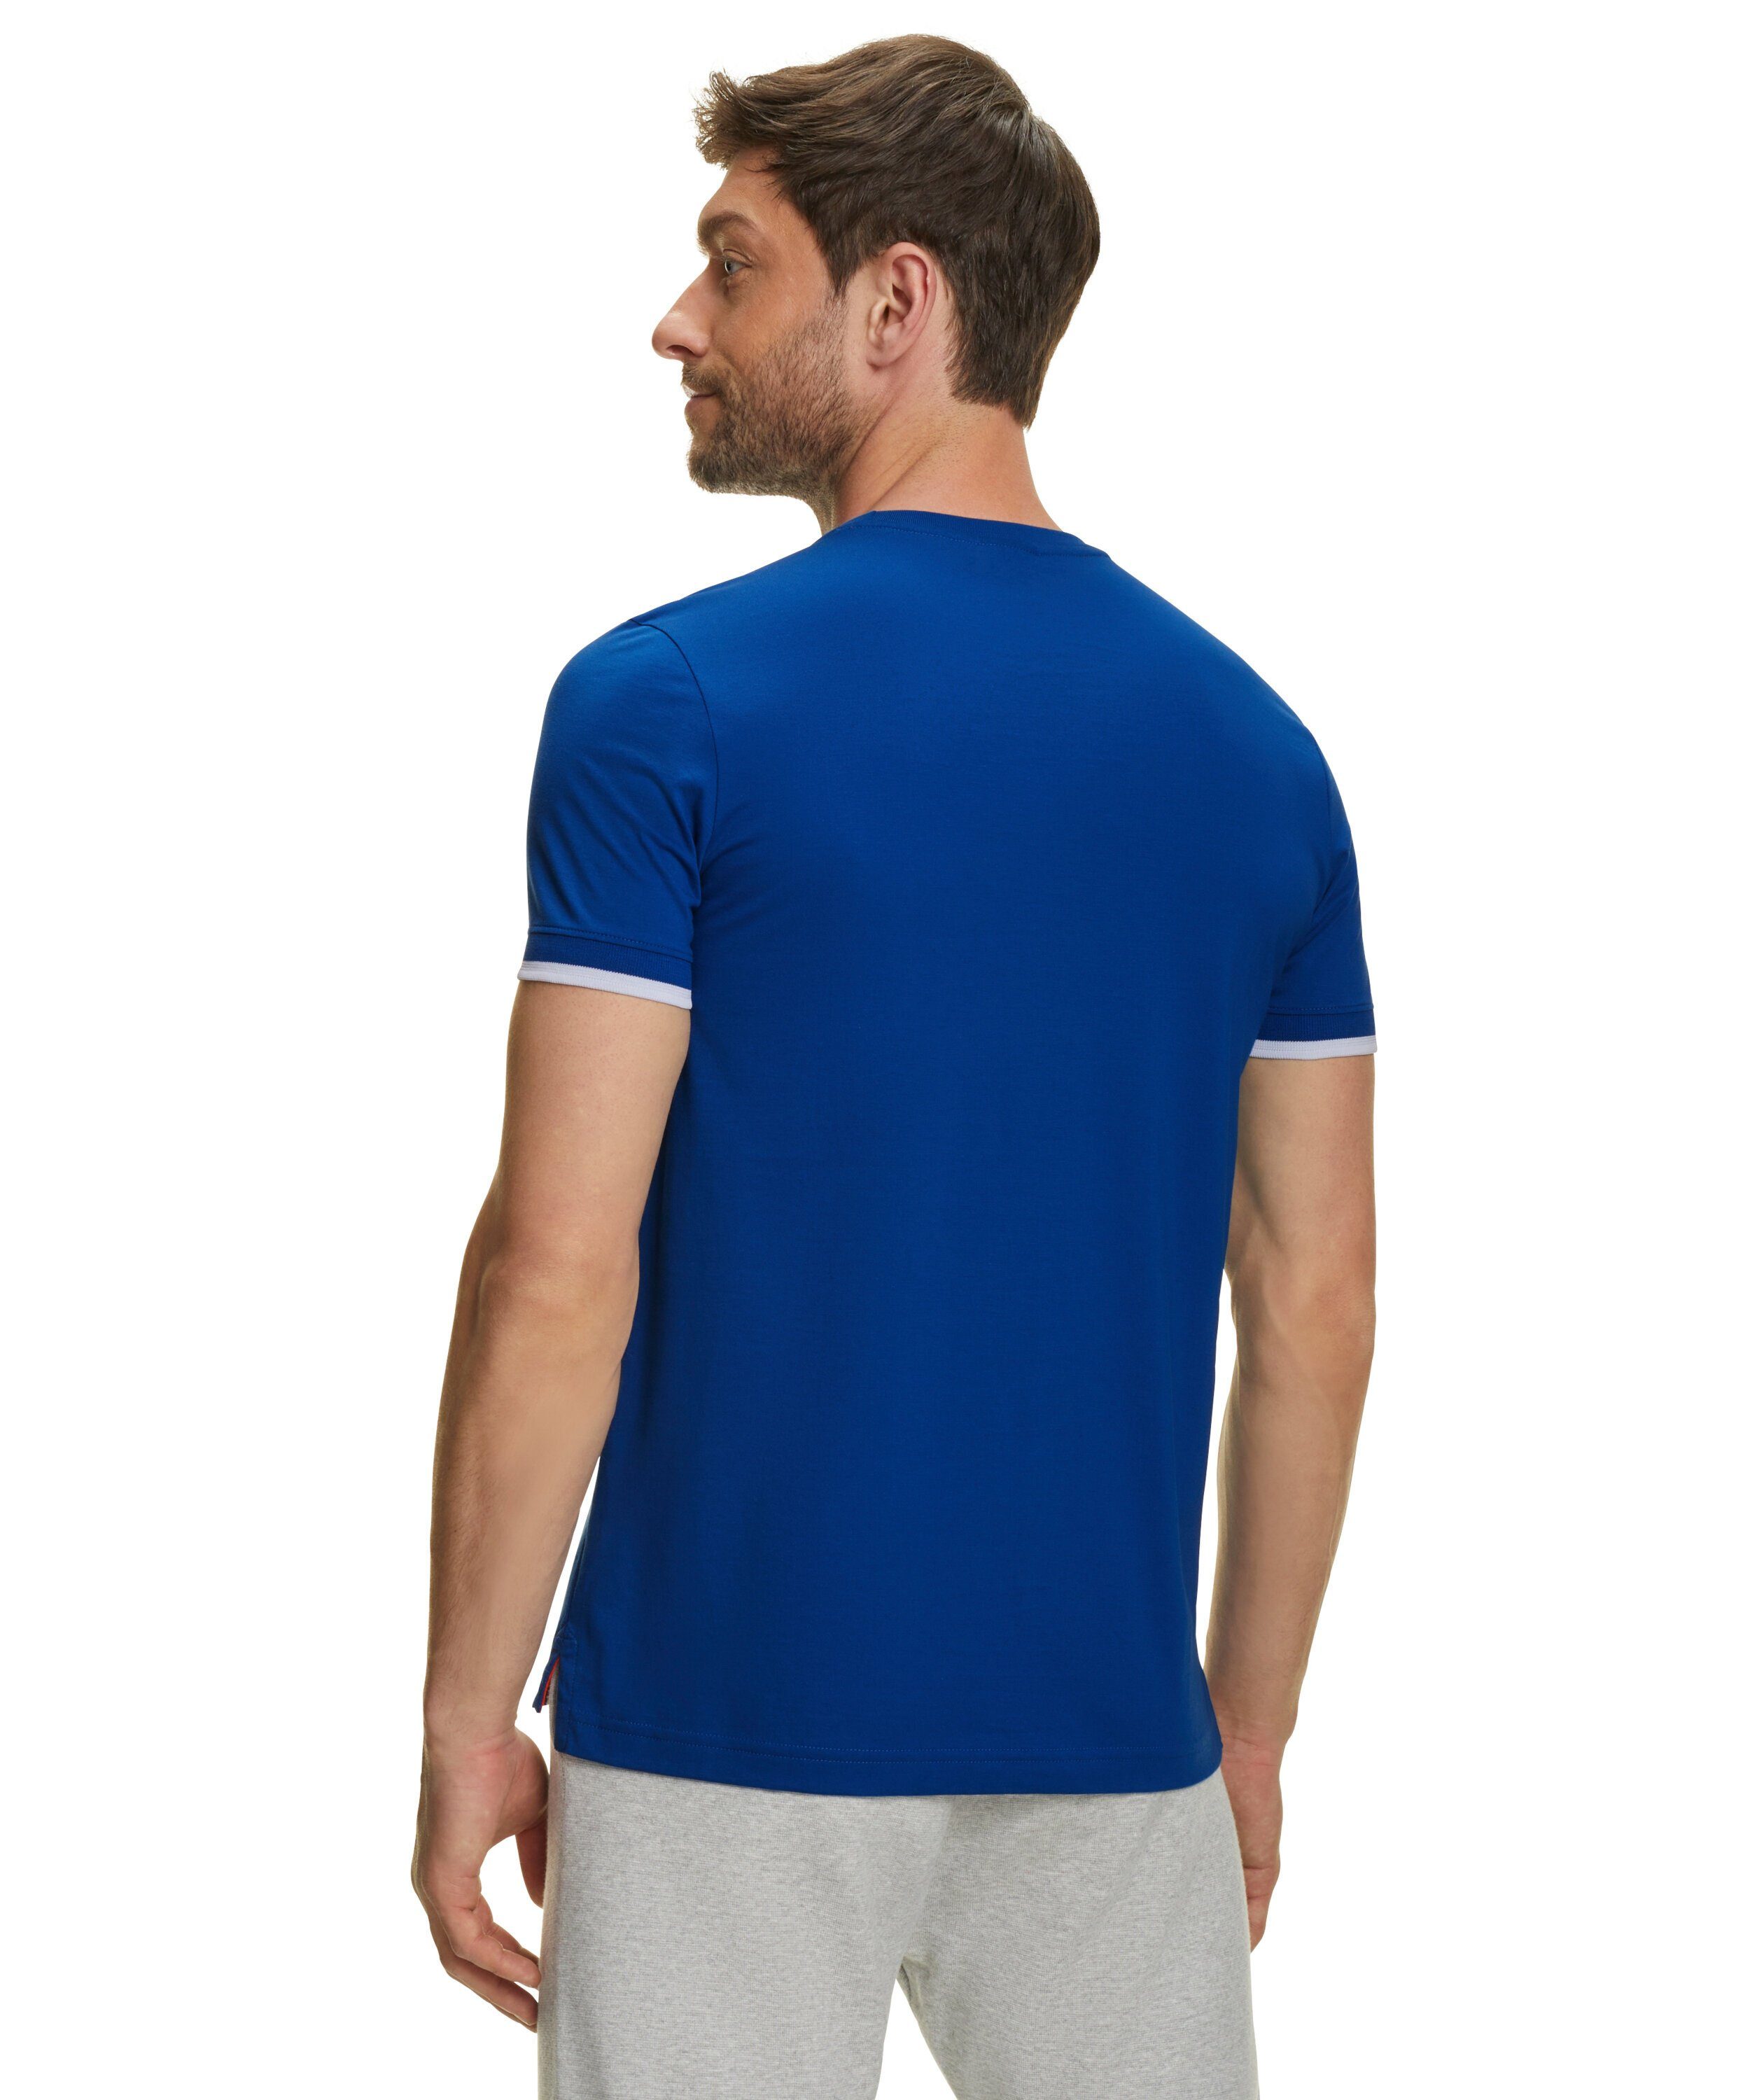 FALKE T-Shirt (1-tlg) petrol (6493) Pima-Baumwolle aus blue hochwertiger